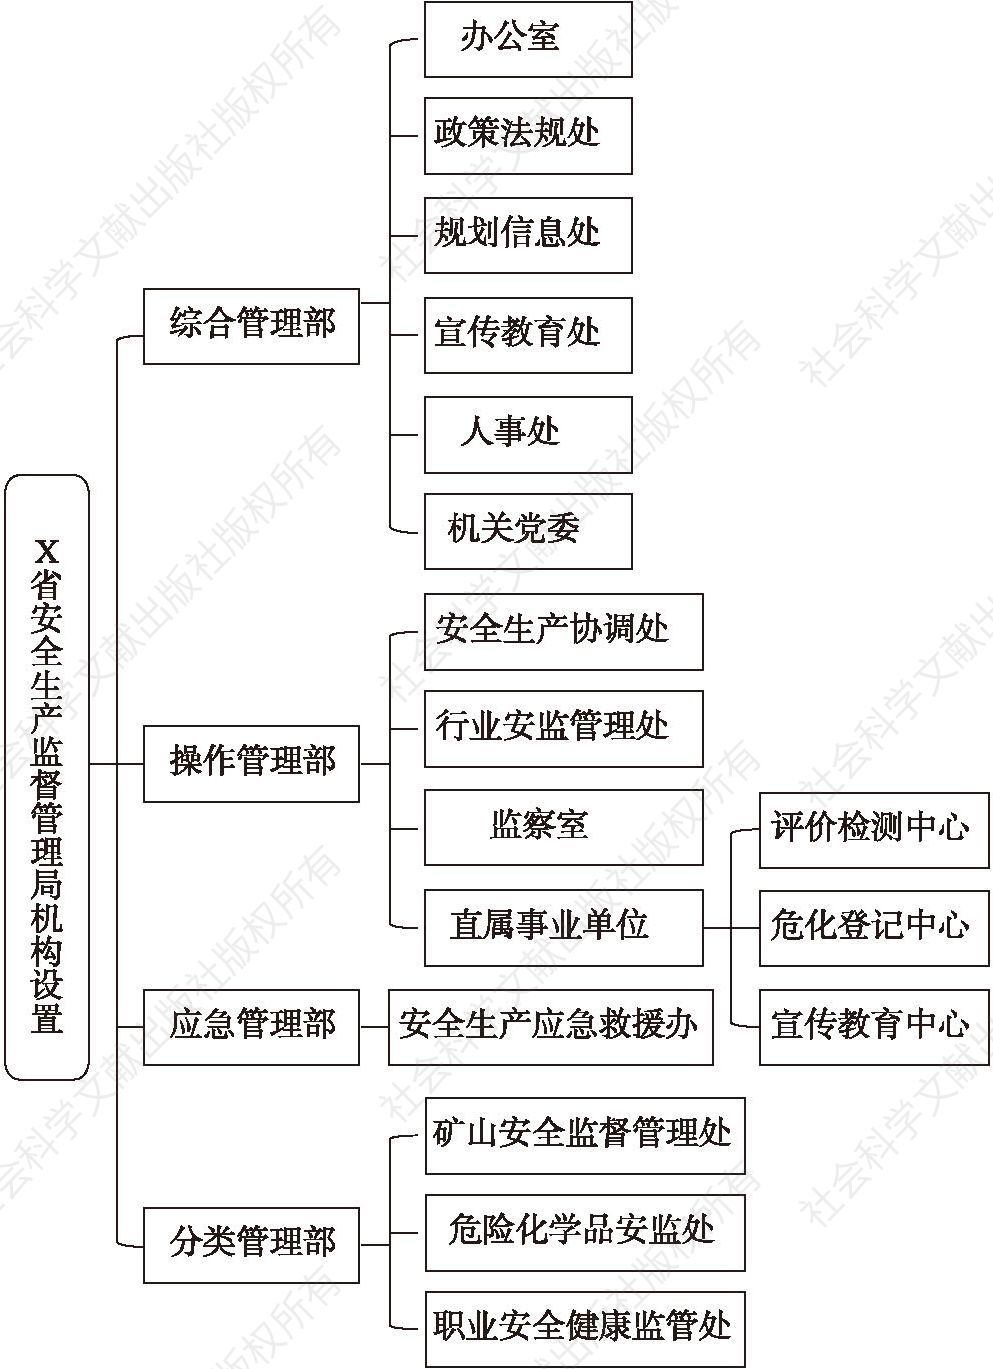 图4-1 X省安全生产监督管理局管理系统